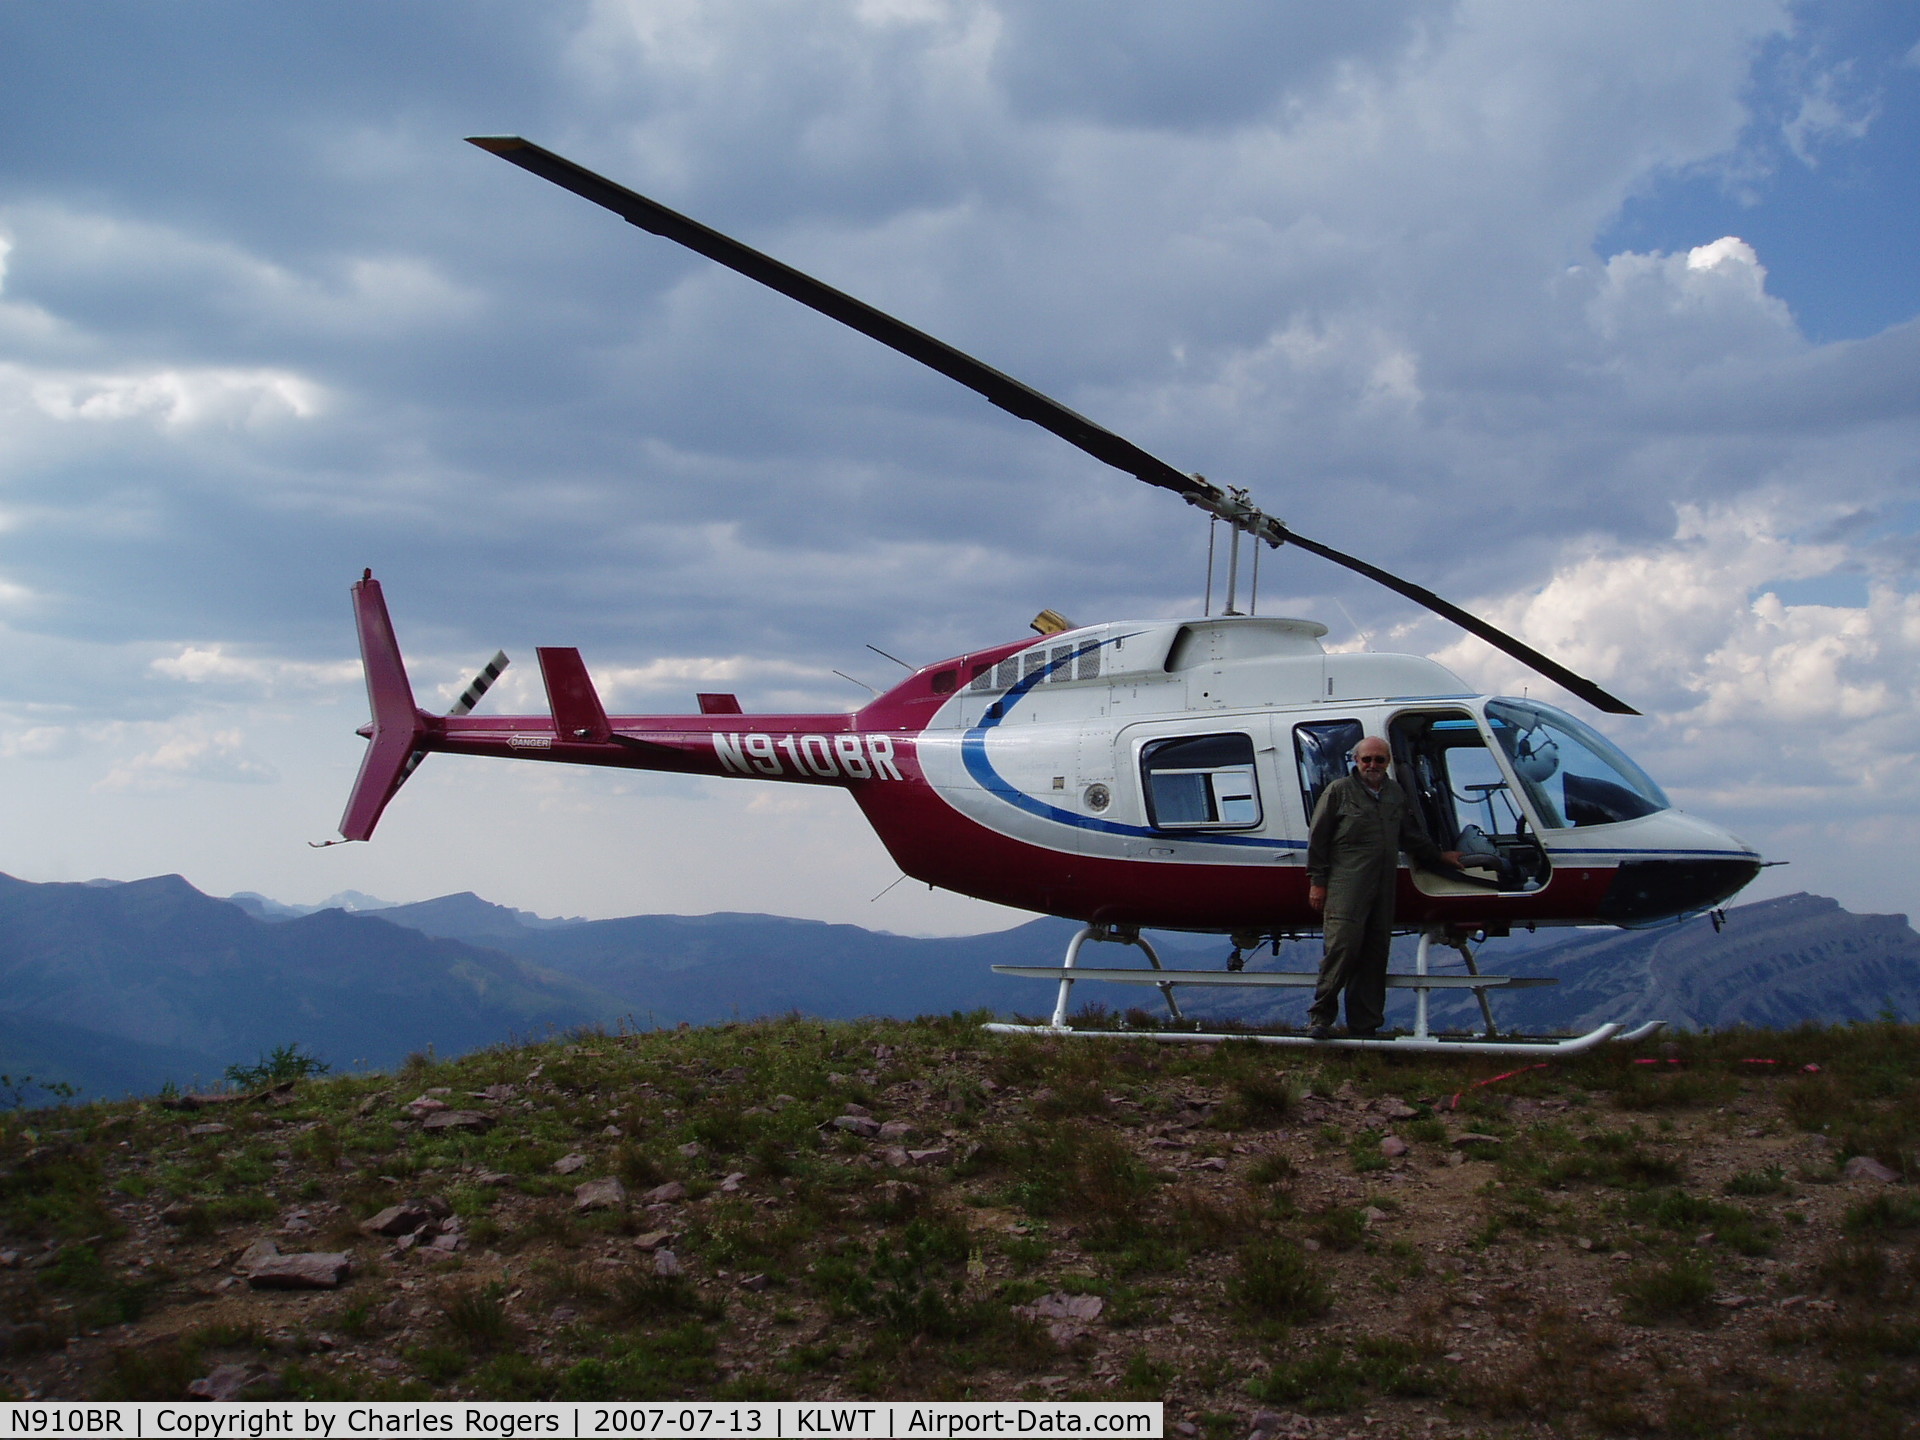 N910BR, 2004 Bell 206L-4 LongRanger LongRanger C/N 52294, Taken In Bob Marshall Wilderness